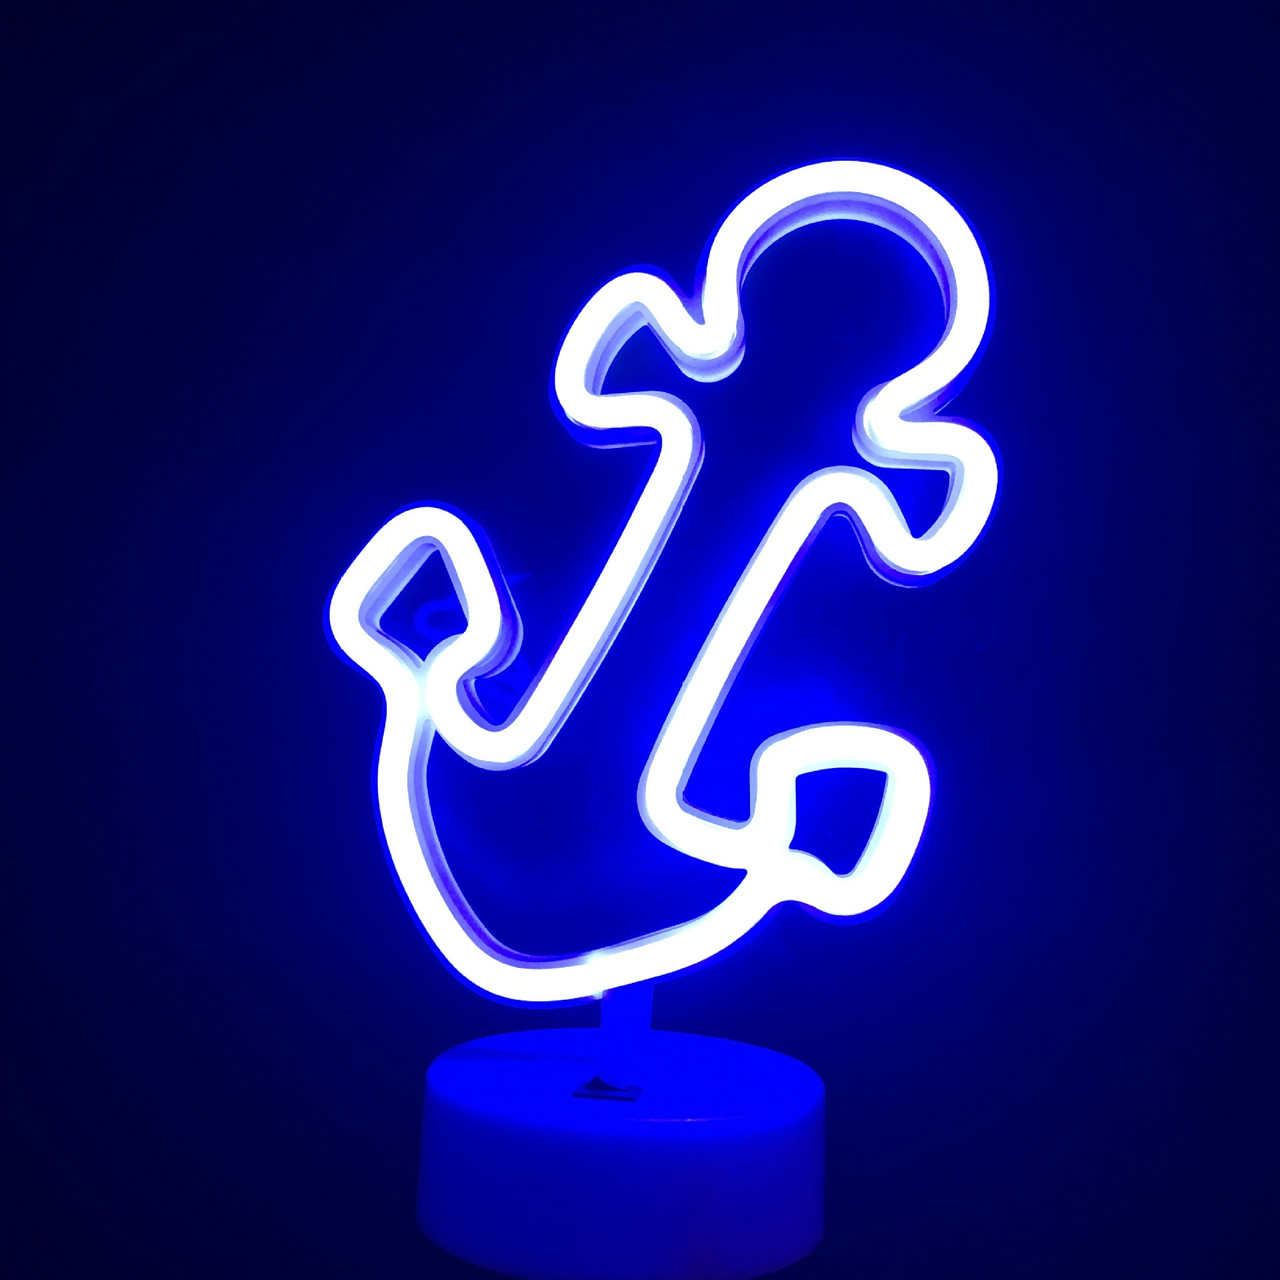 Декоративний неоновий світильник-нічник із підставкою Якір, неонові вогні для прикрашування дизайну та інтер'єру